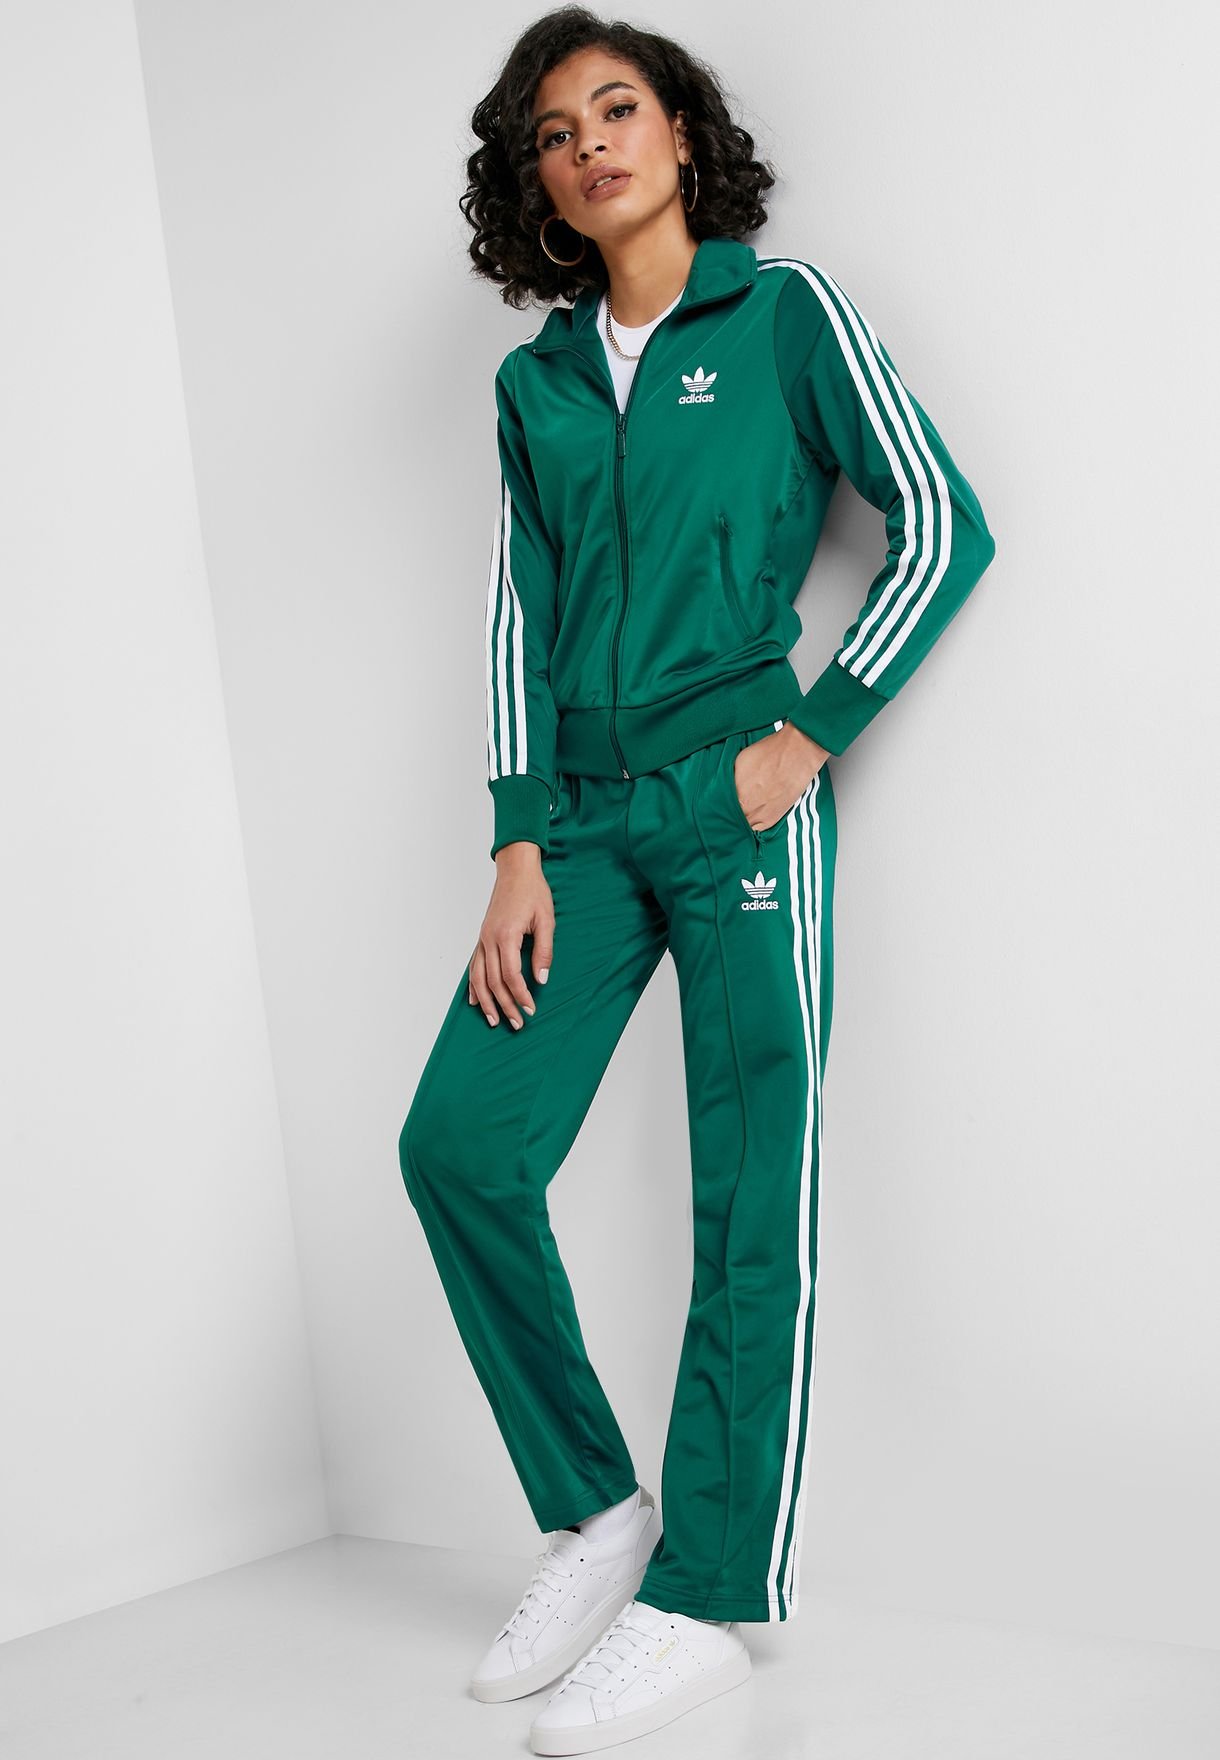 Адидас зеленый спортивный. Спортивный костюм женский адидас 2021. Адидас ориджинал спортивный костюм зеленый. Костюм адидас Firebird зелёный. Спортивный костюм адидас зеленый.